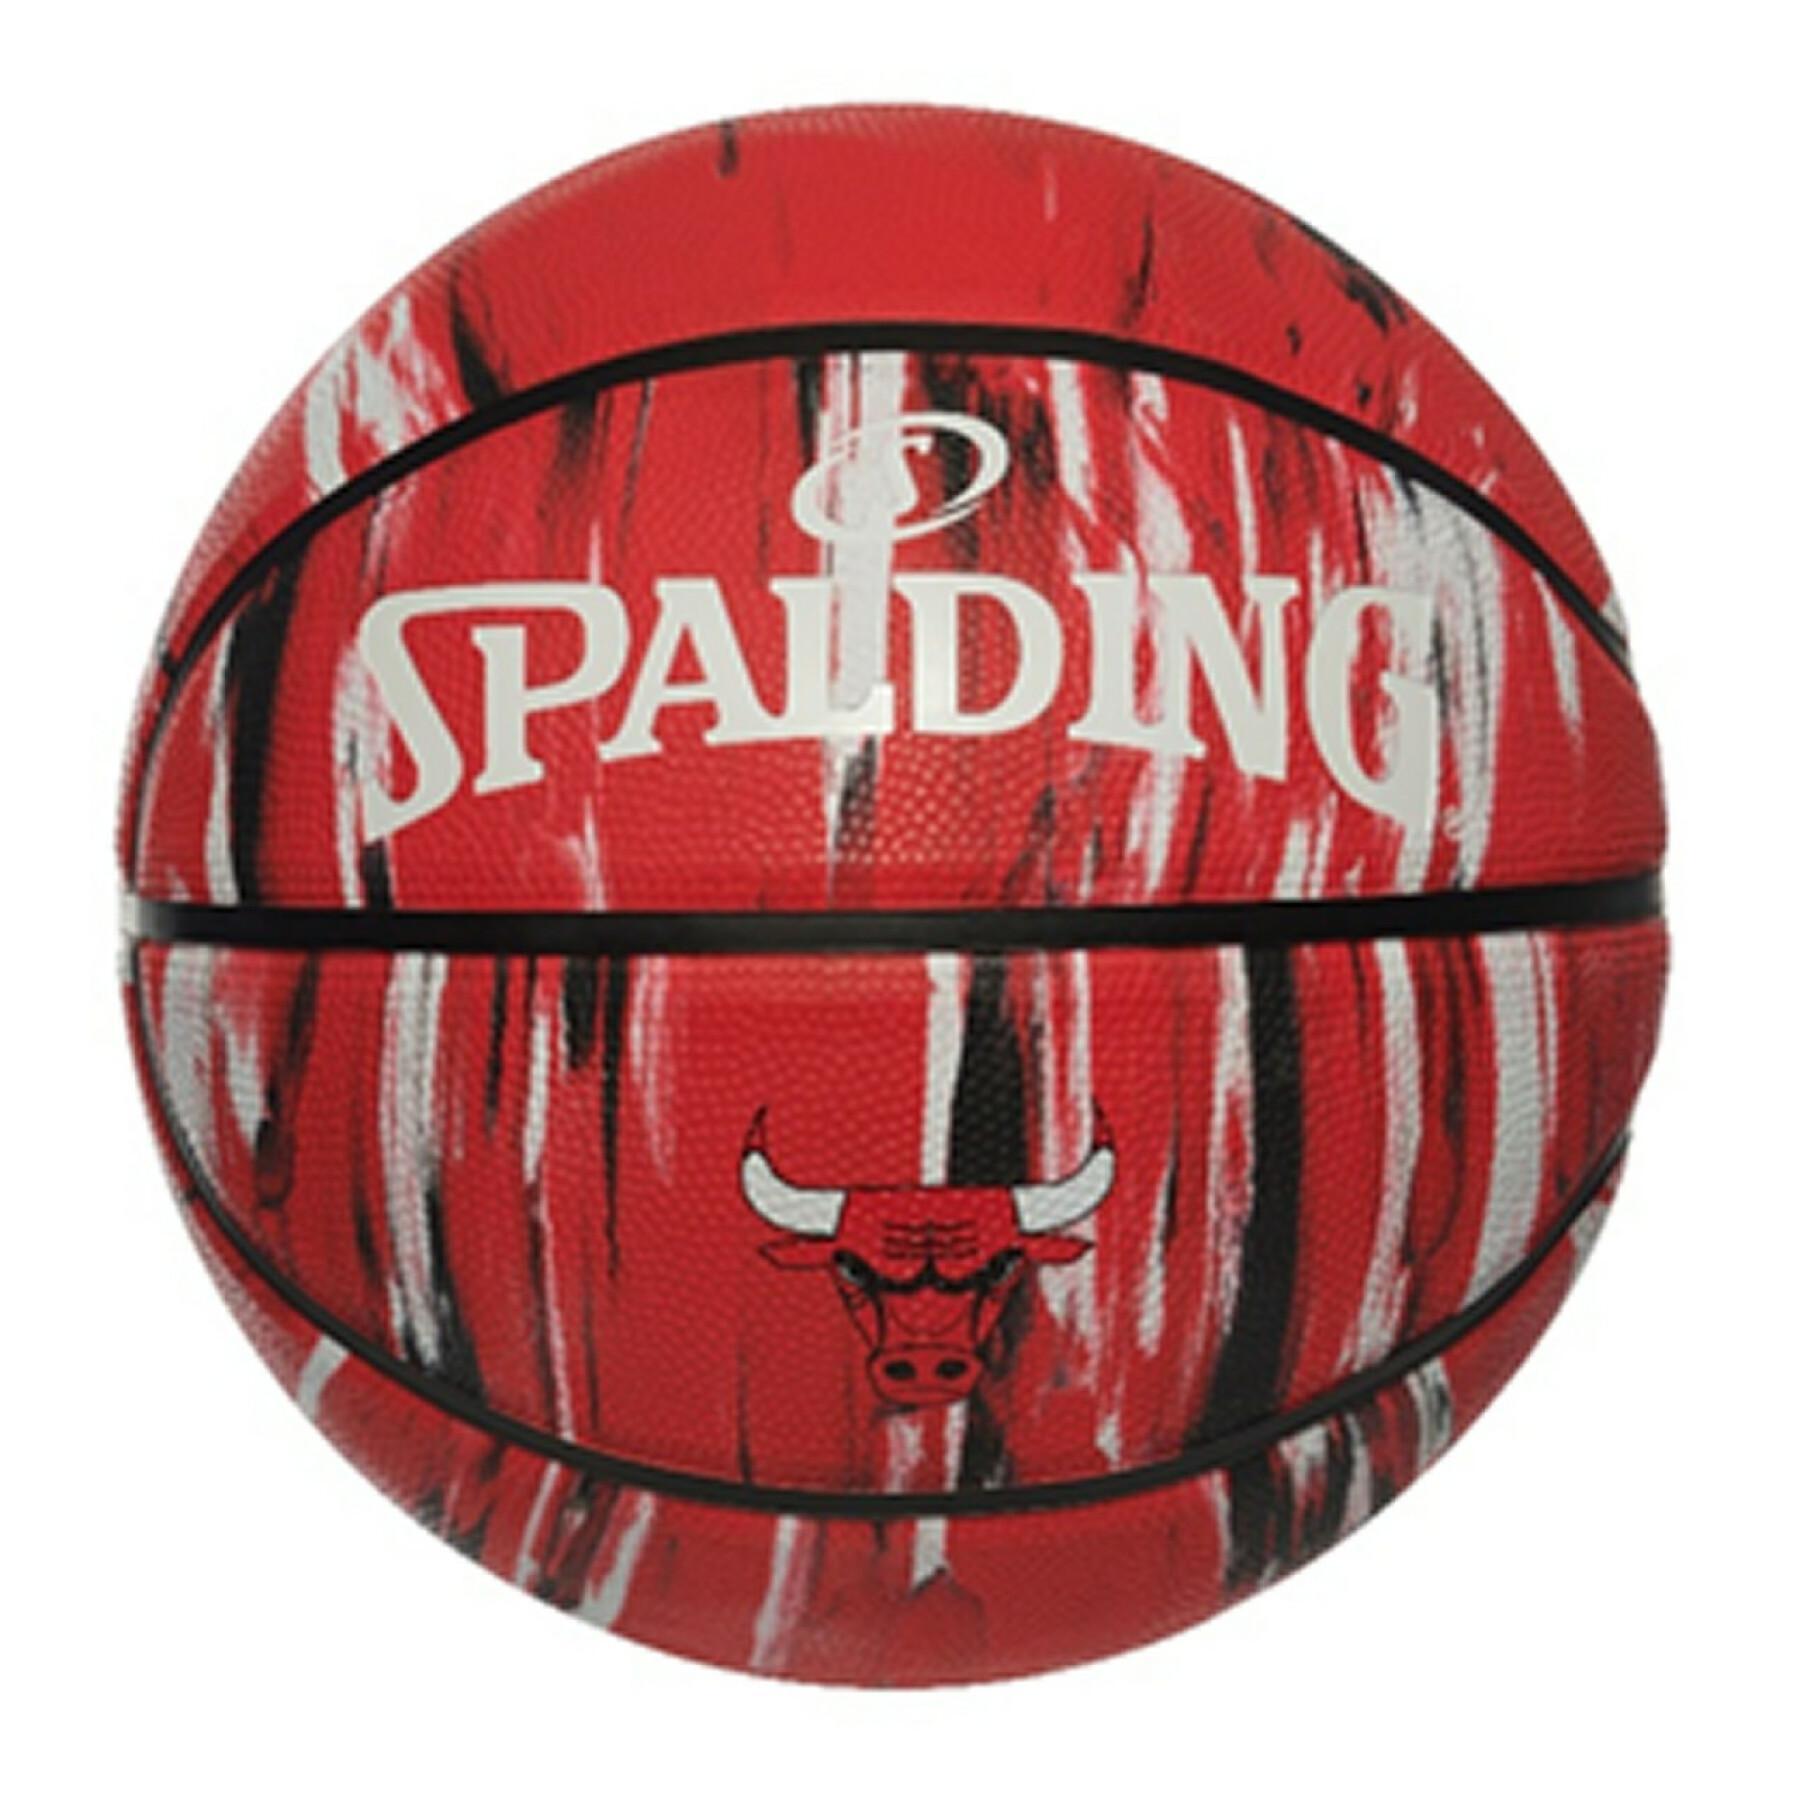 Ballon Spalding NBA Chicago Bulls (84-127Z)